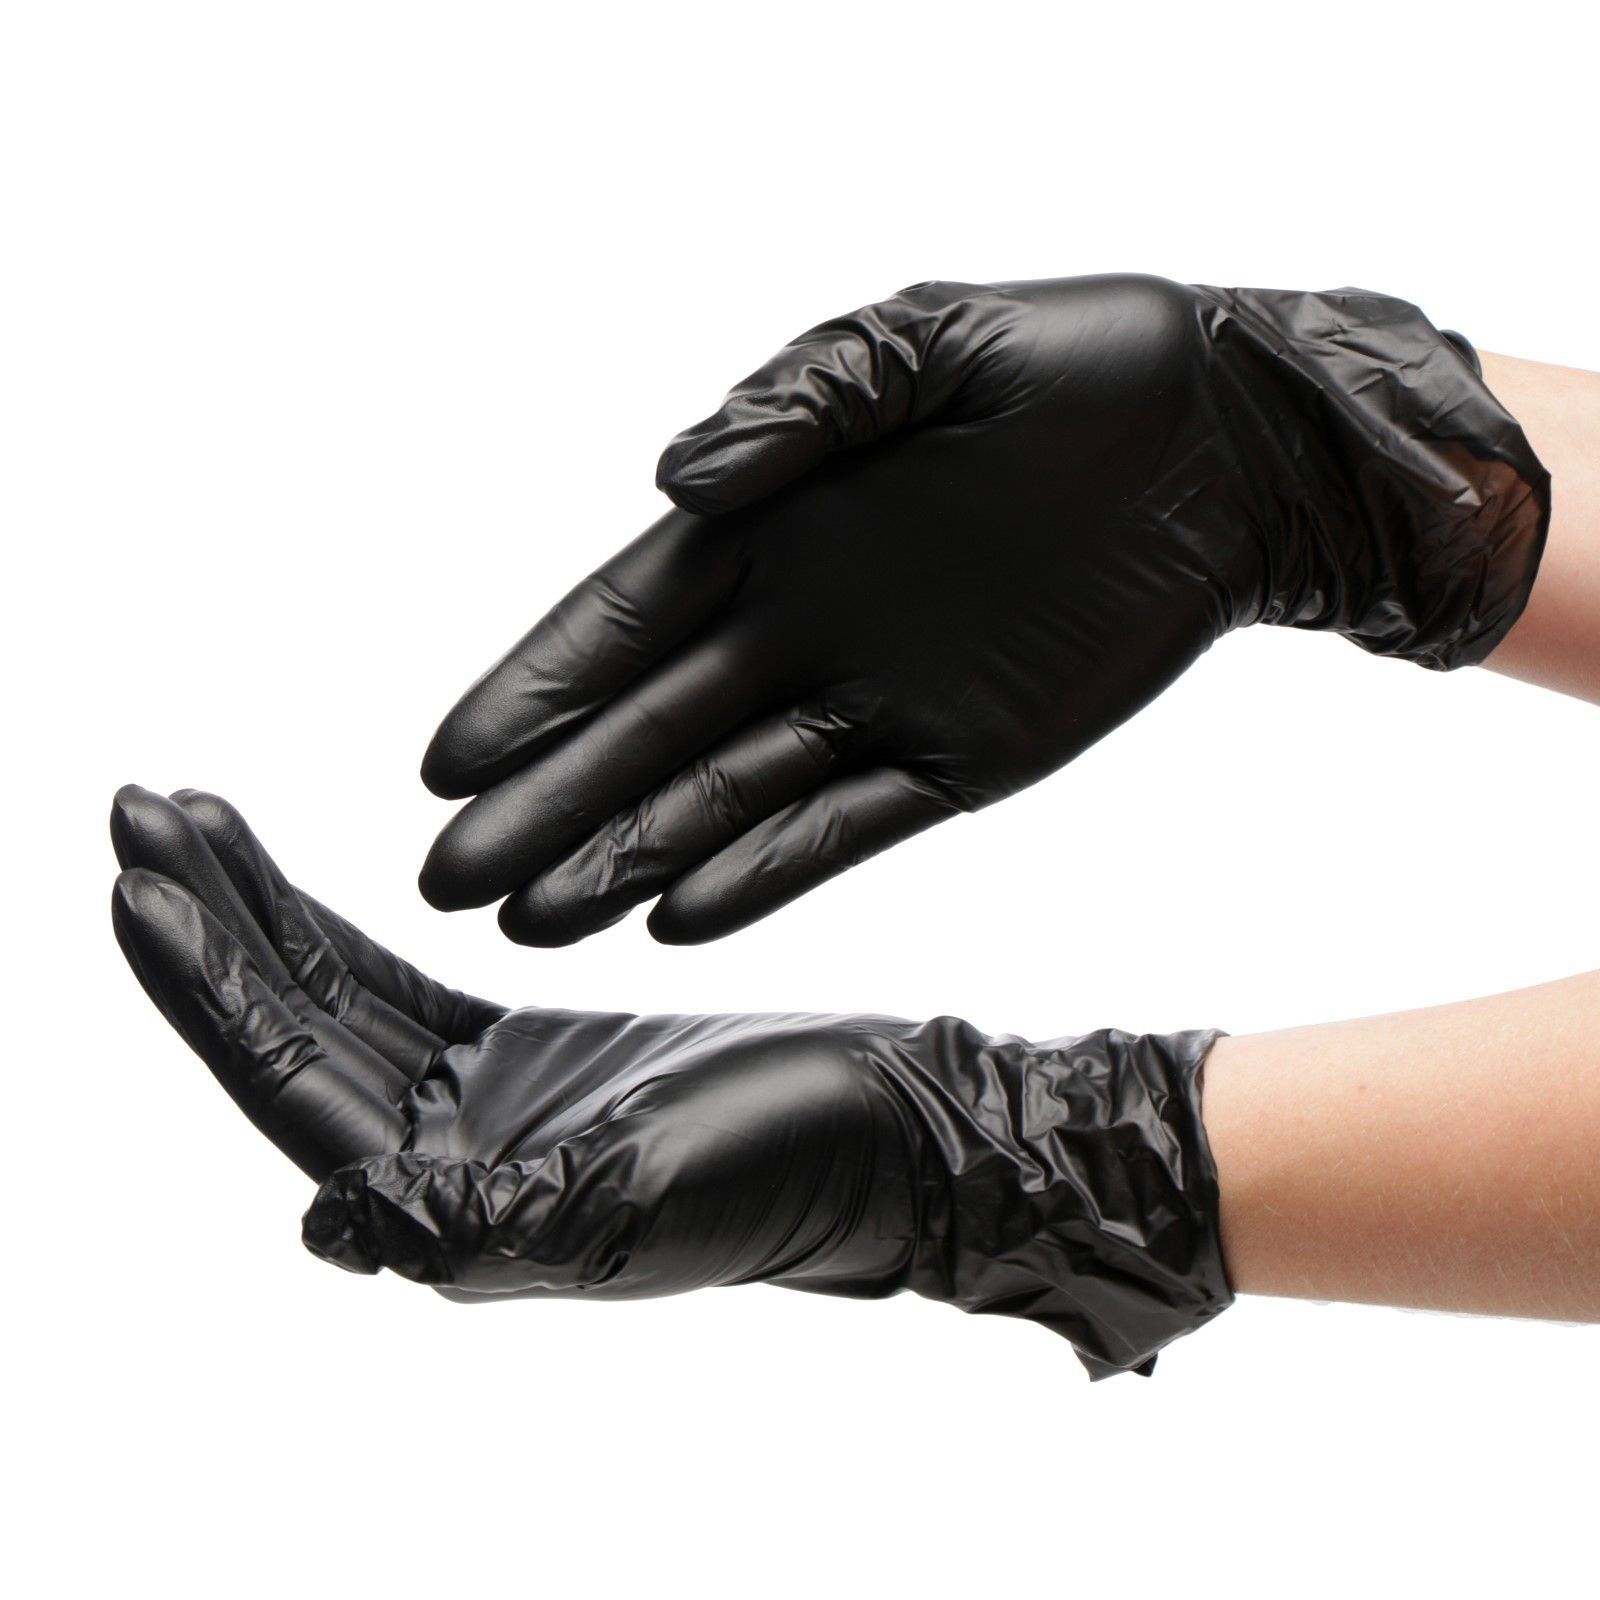 Перчатки одноразовые нитровиниловые 50 пар (100 штук), размер L (большой), черные, BENOVY